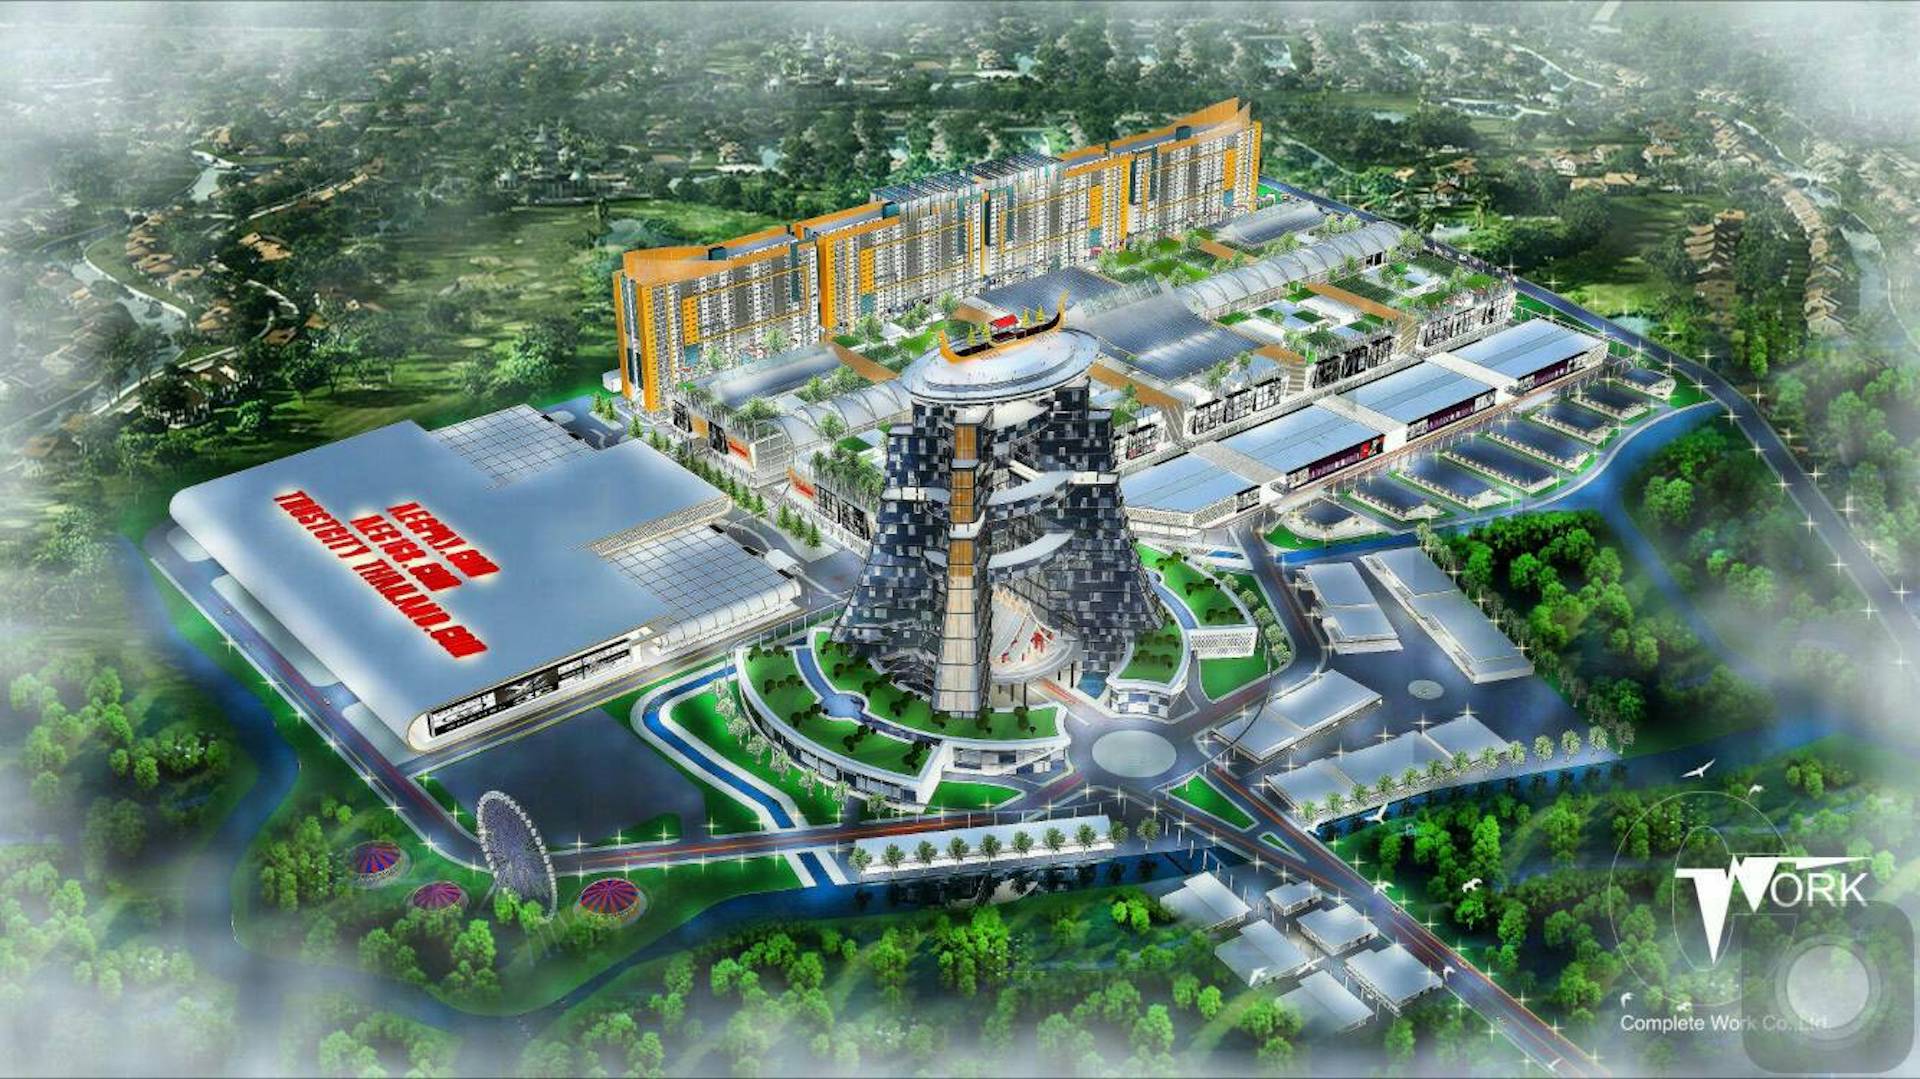 กลุ่มทุนไทย-จีนปั้น “Trust City” เมืองการค้ามูลค่ากว่า100,000ล้านบาท 
ศูนย์แสดงสินค้าใหญ่สุดแห่ง AEC ชู Fintech Hub ใหญ่ที่สุดในโลก